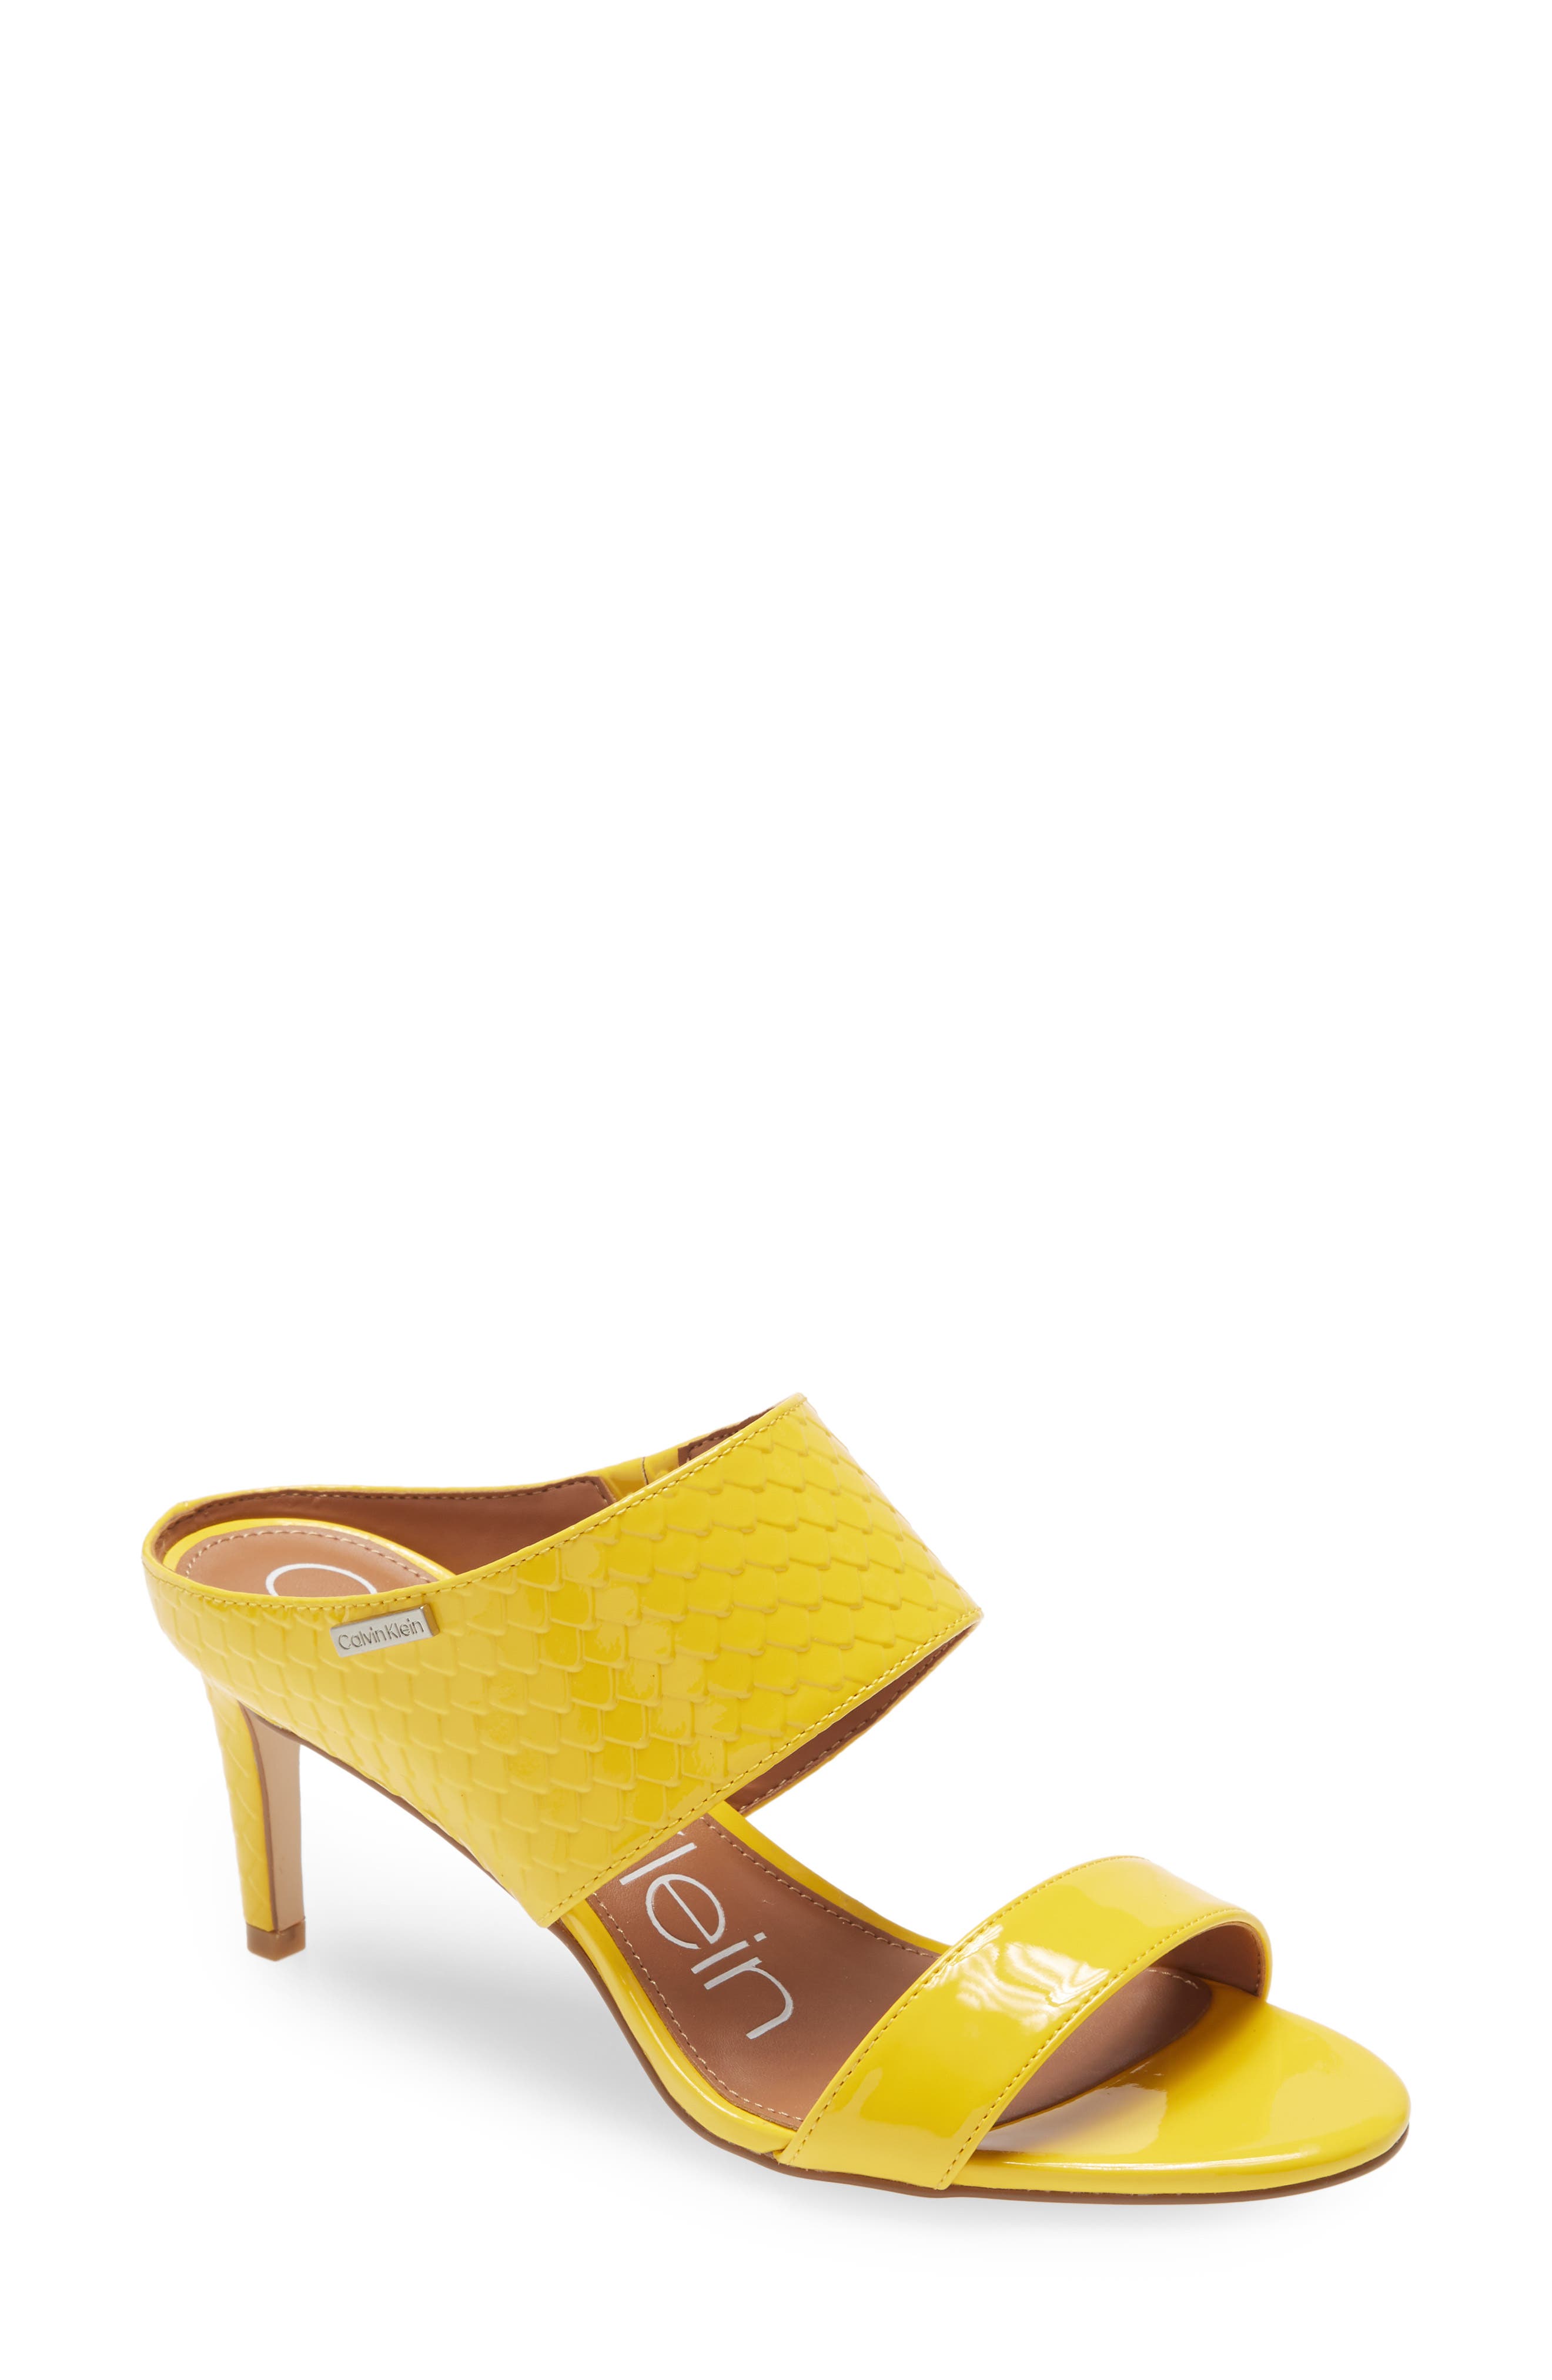 yellow heels canada